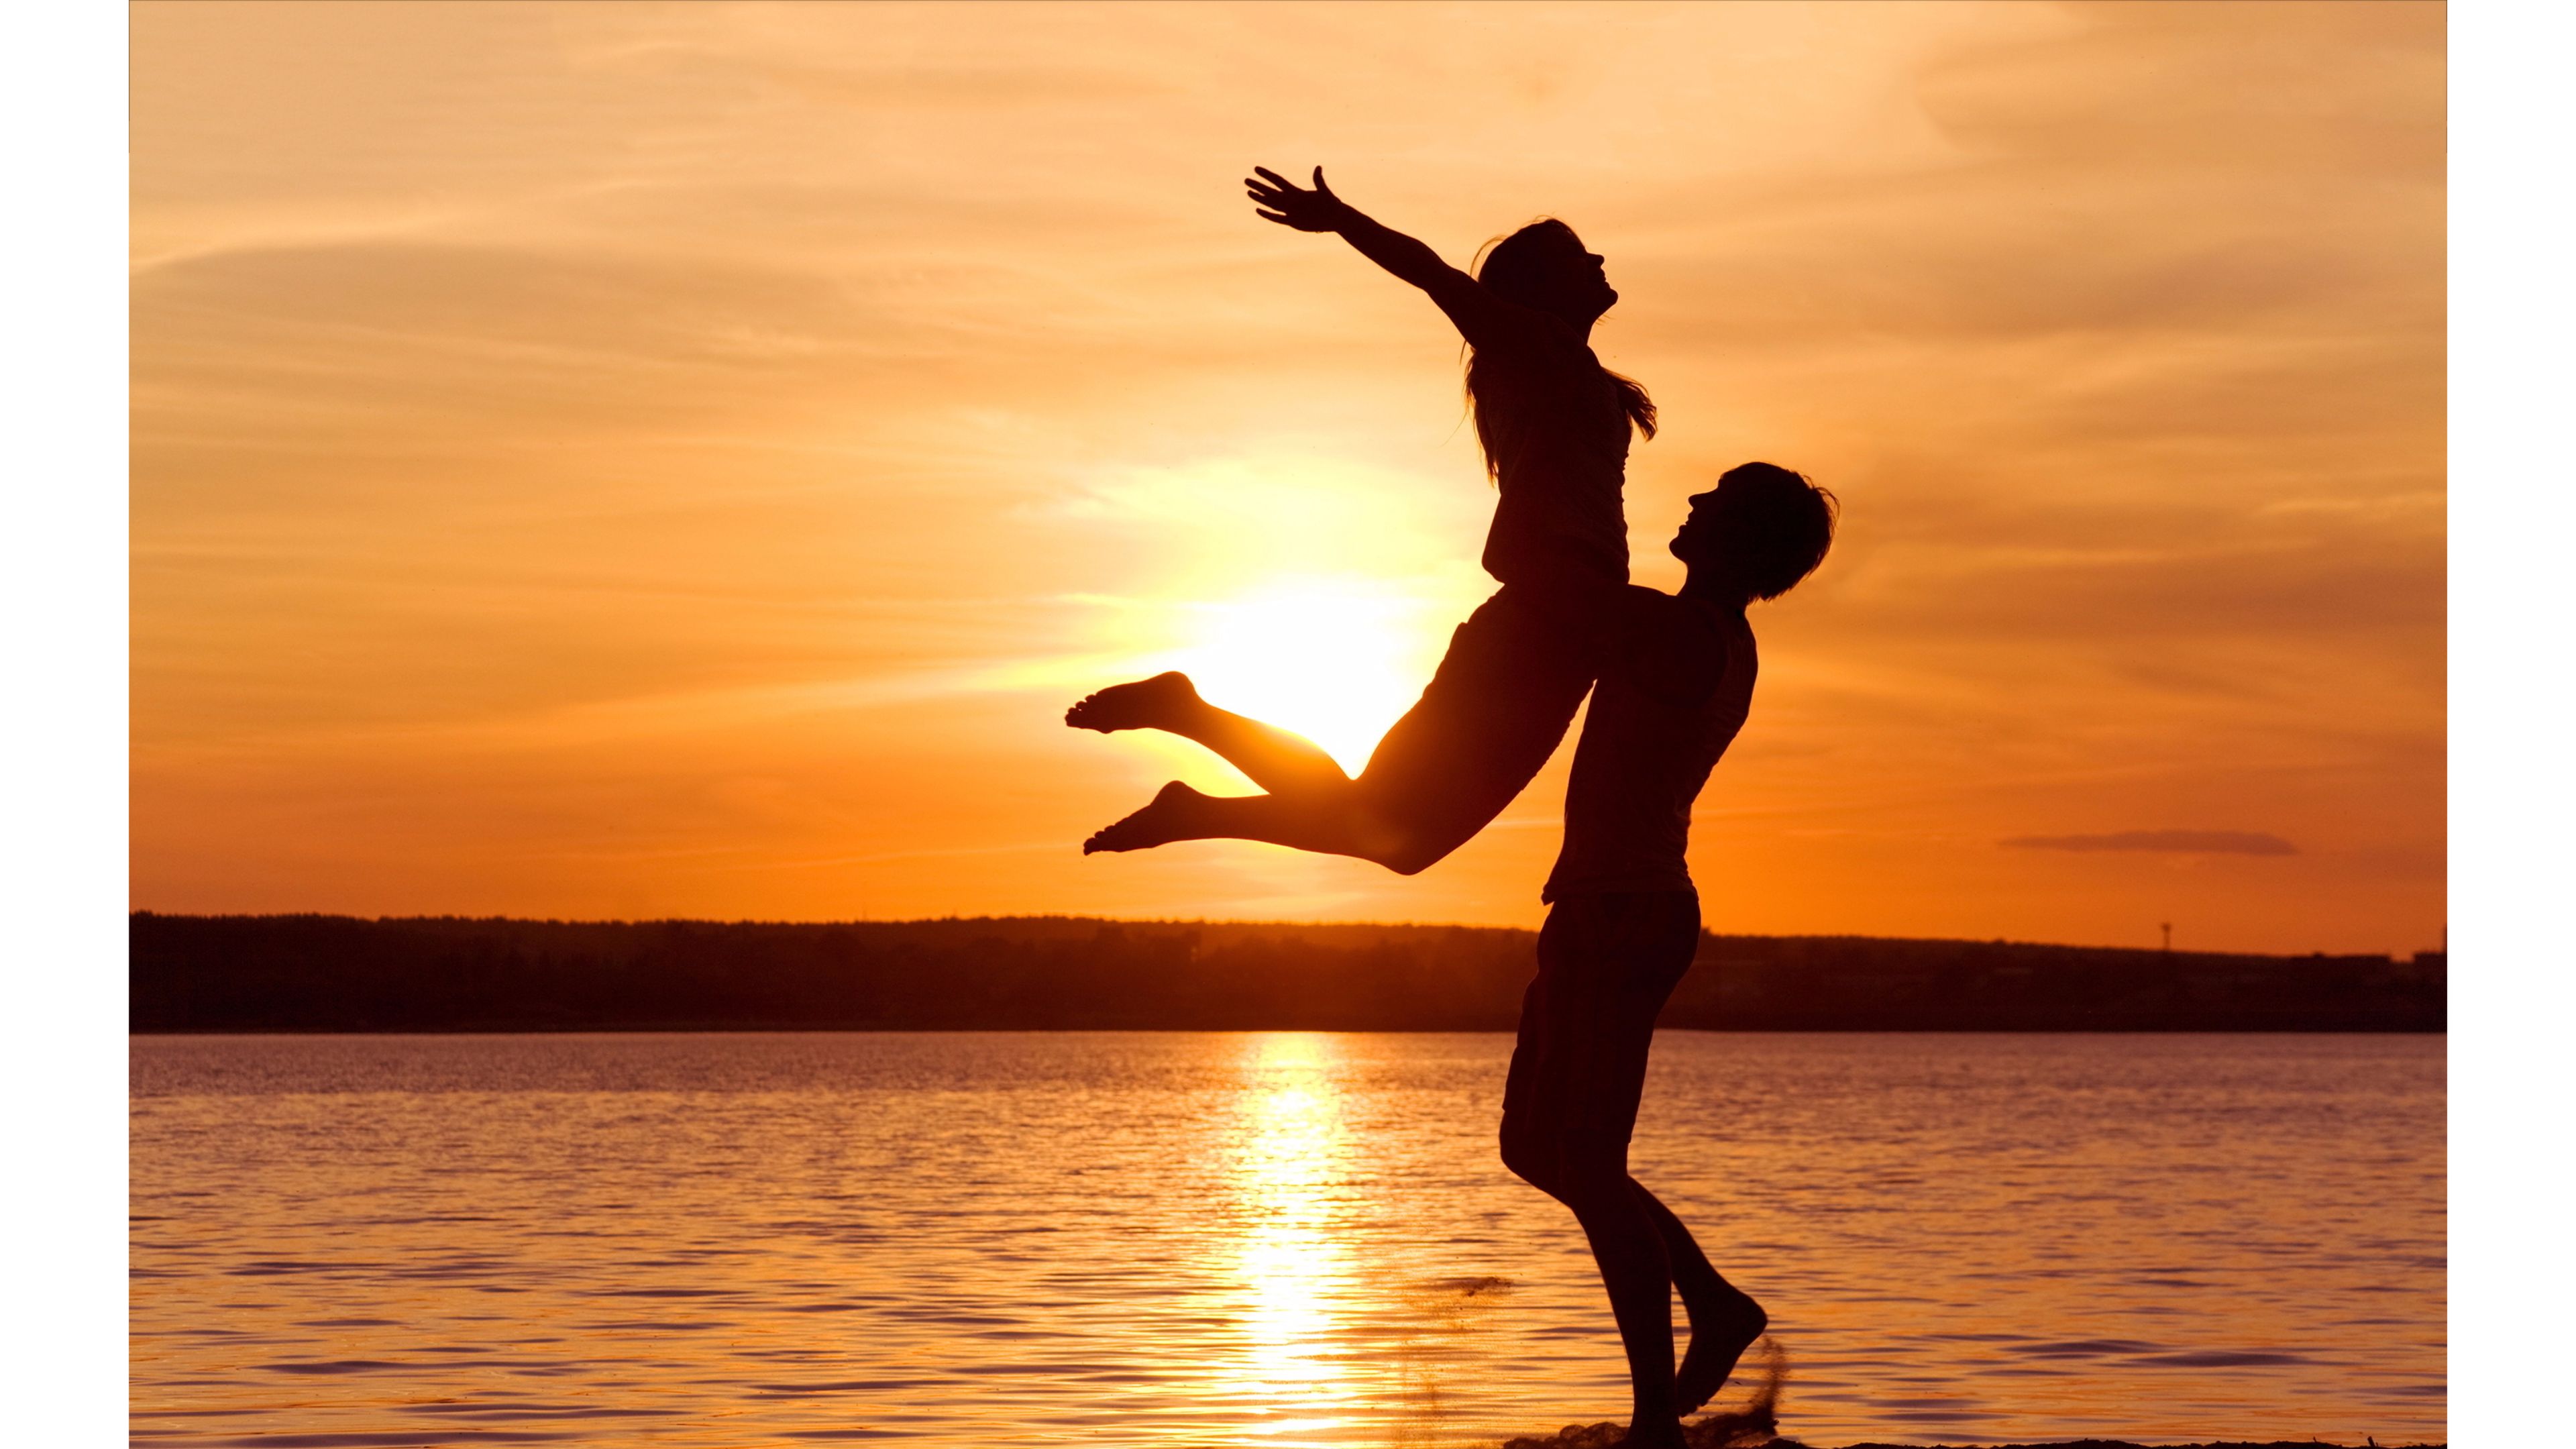 mejores fondos de pantalla románticos,contento,cielo,saltando,divertido,puesta de sol